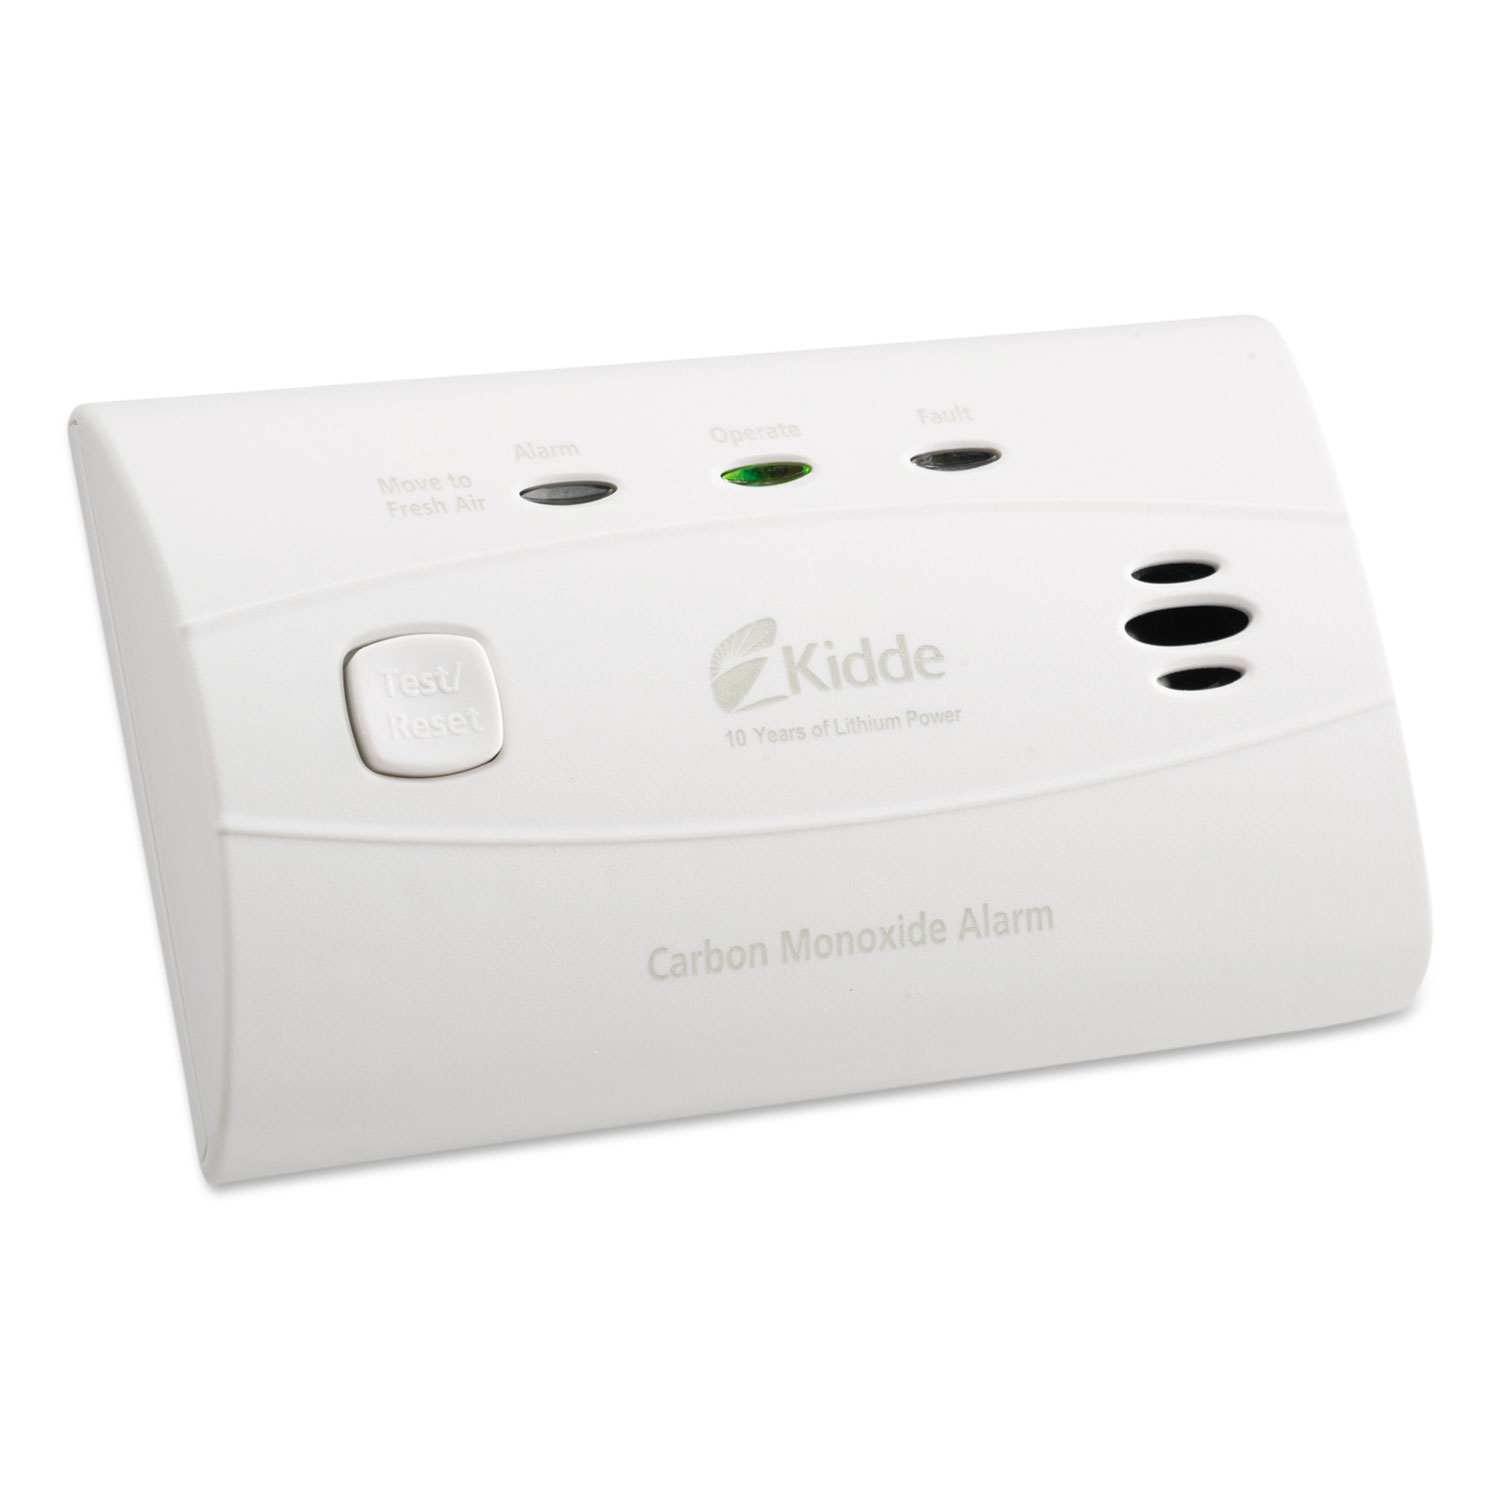 Sealed Battery Carbon Monoxide Alarm, Lithium Battery, 4.5W x 2.75H x 1.5D